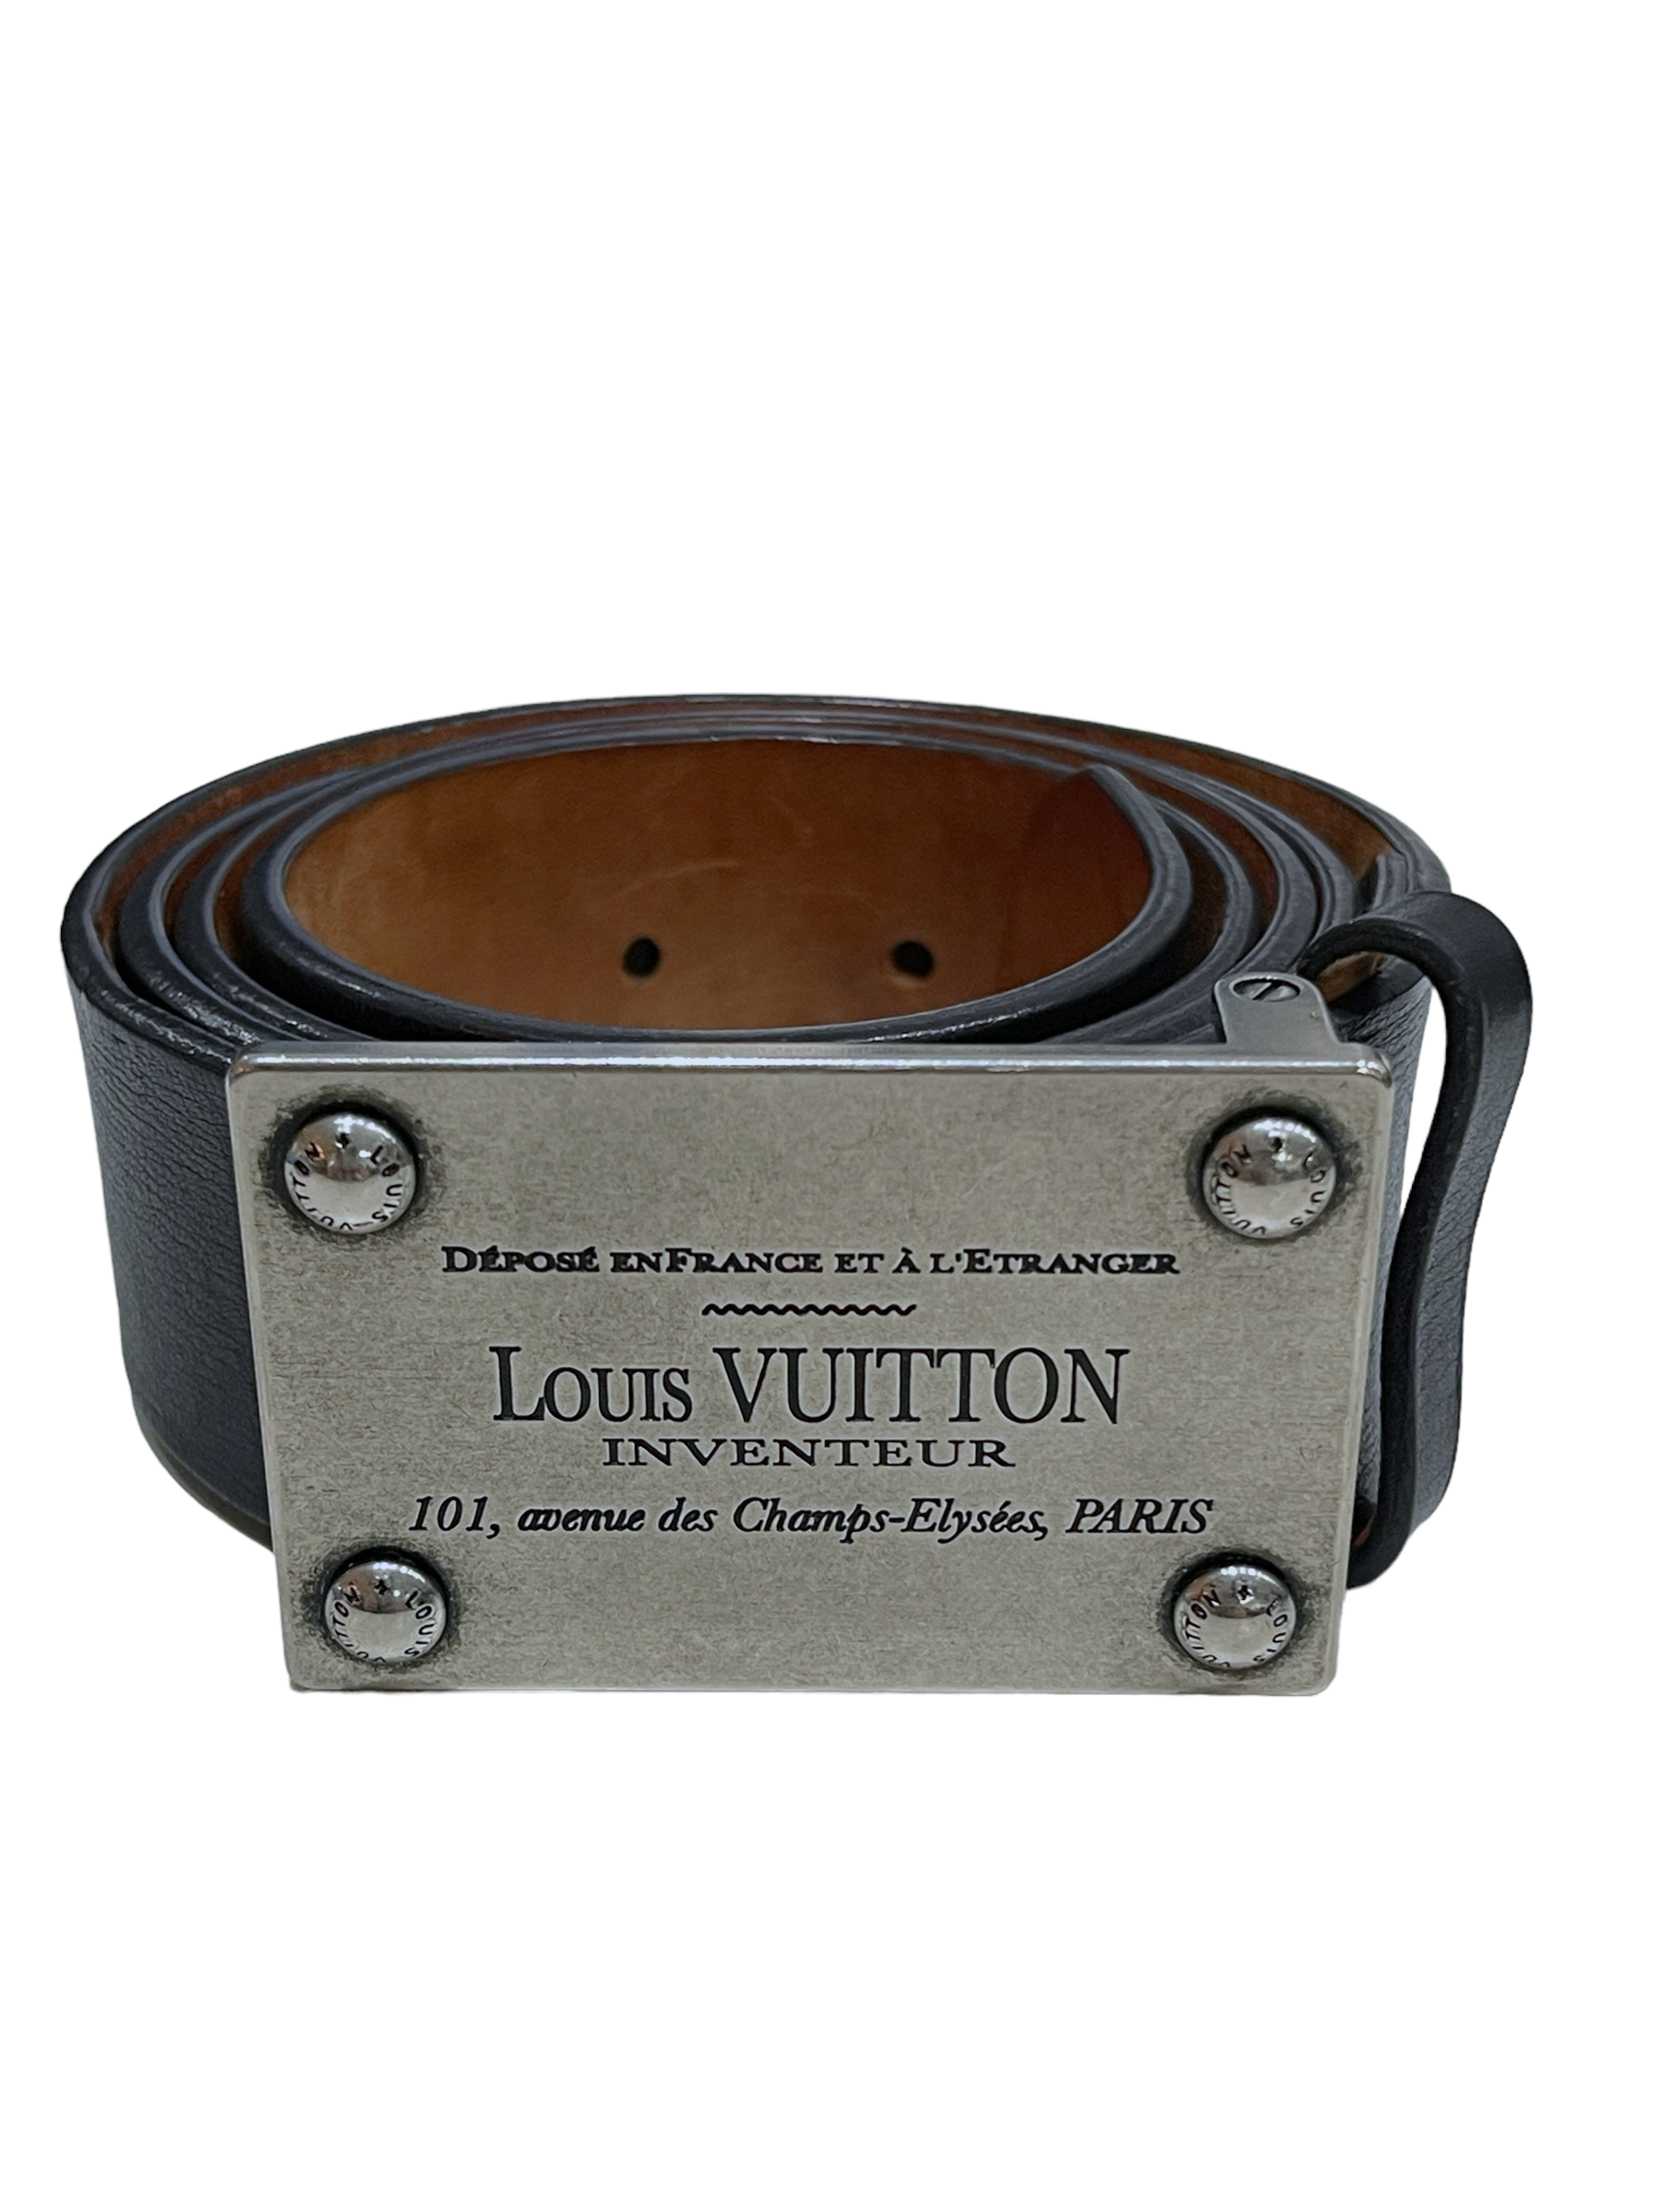 Louis Vuitton Inventeur Dark Brown Leather Belt Size 34